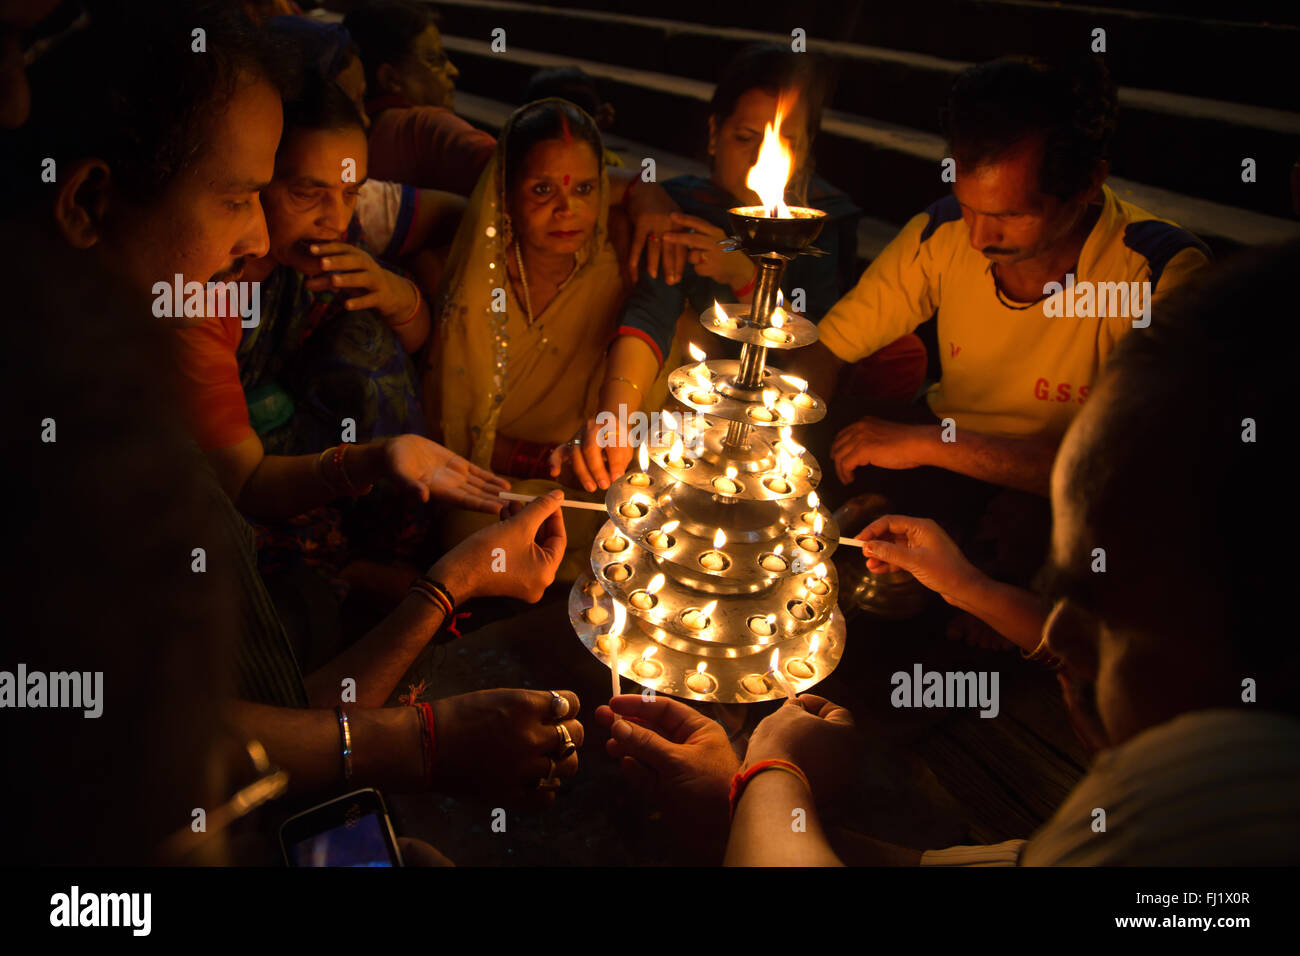 Pèlerins hindous allumant des bougies sur un ghat de Varanasi, Inde Banque D'Images